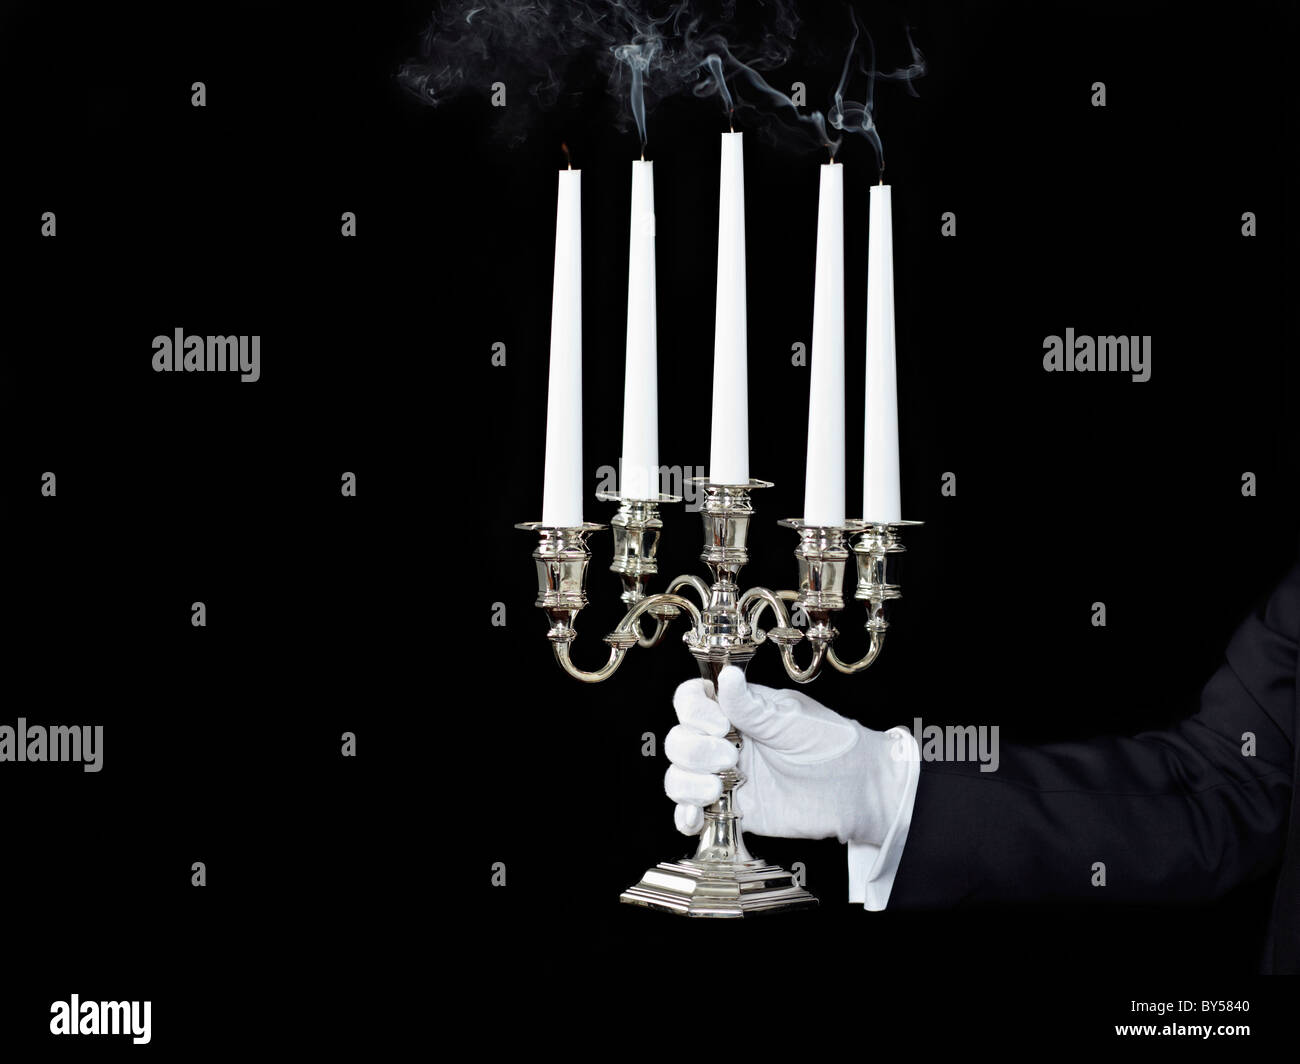 Un homme tenant un candélabre avec bougies éteintes Banque D'Images